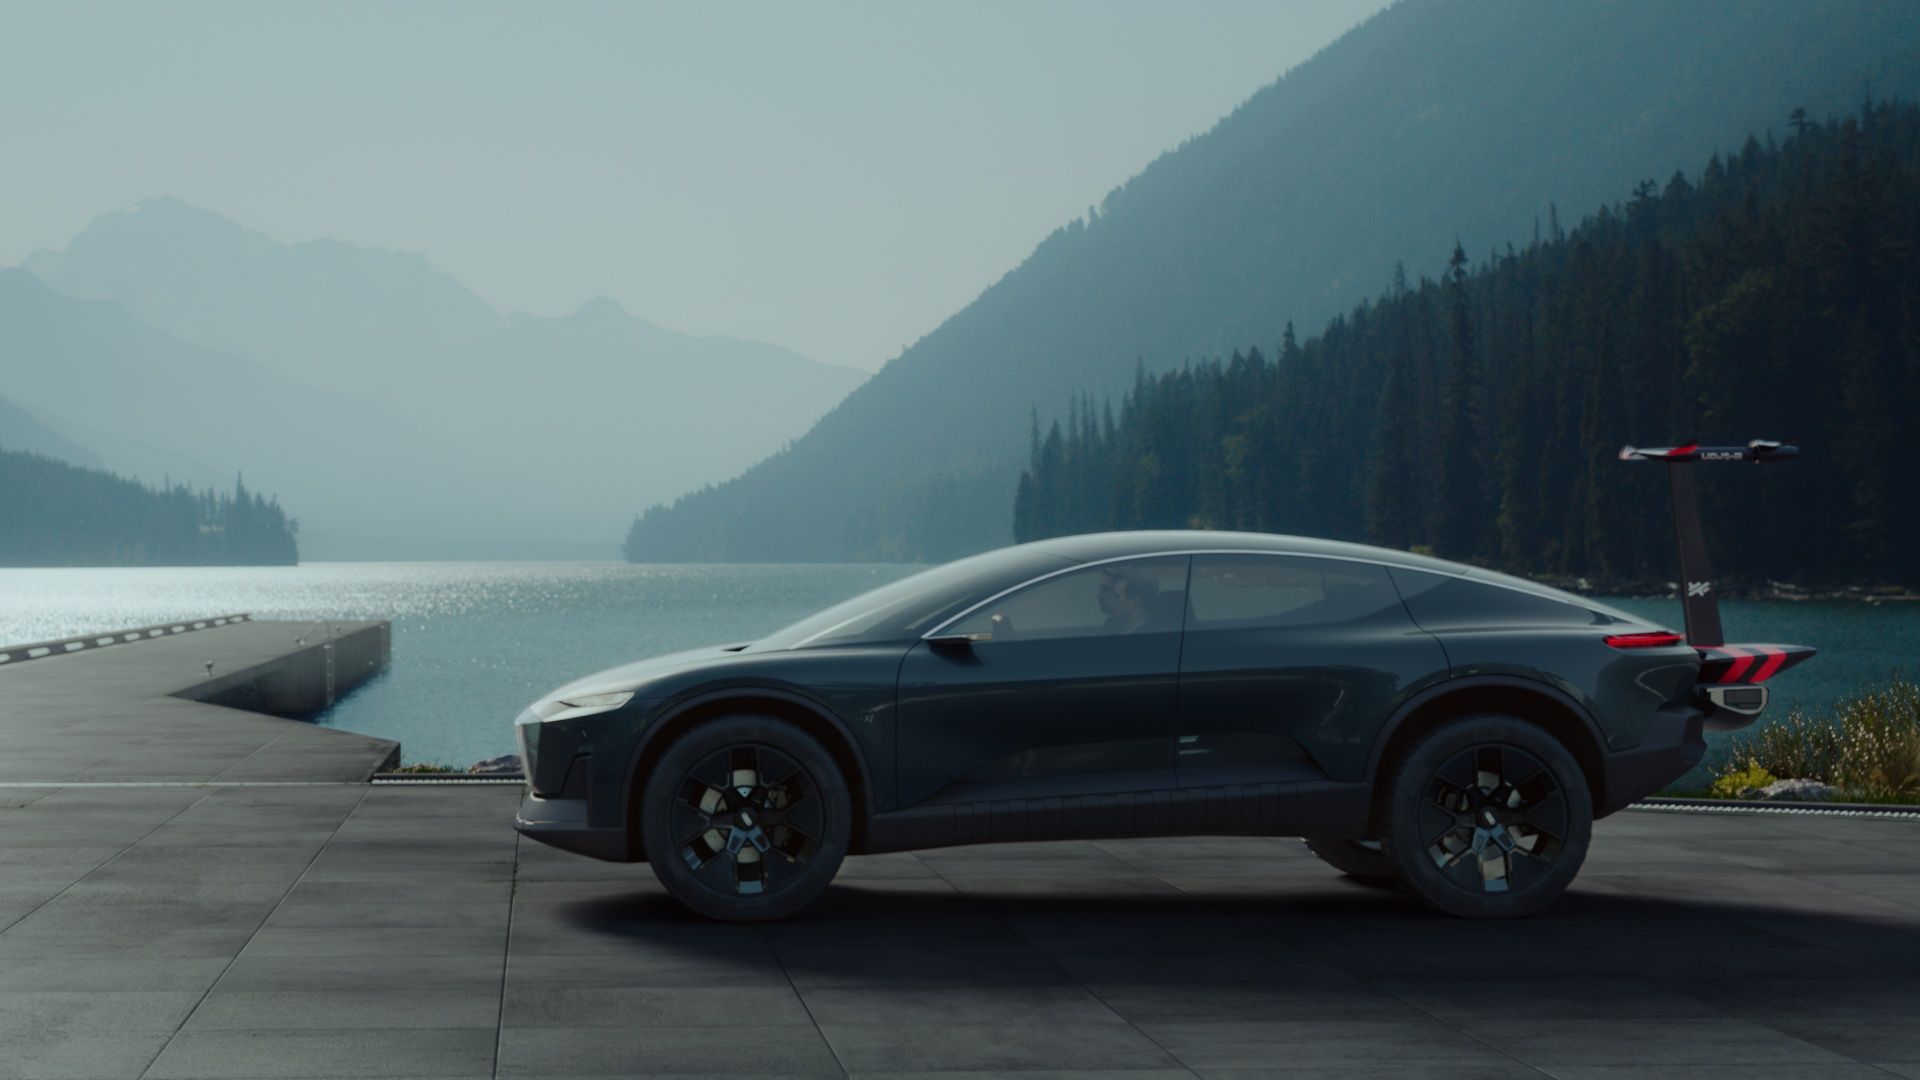 奥迪 activesphere 概念车置身于一片湖景风光前。